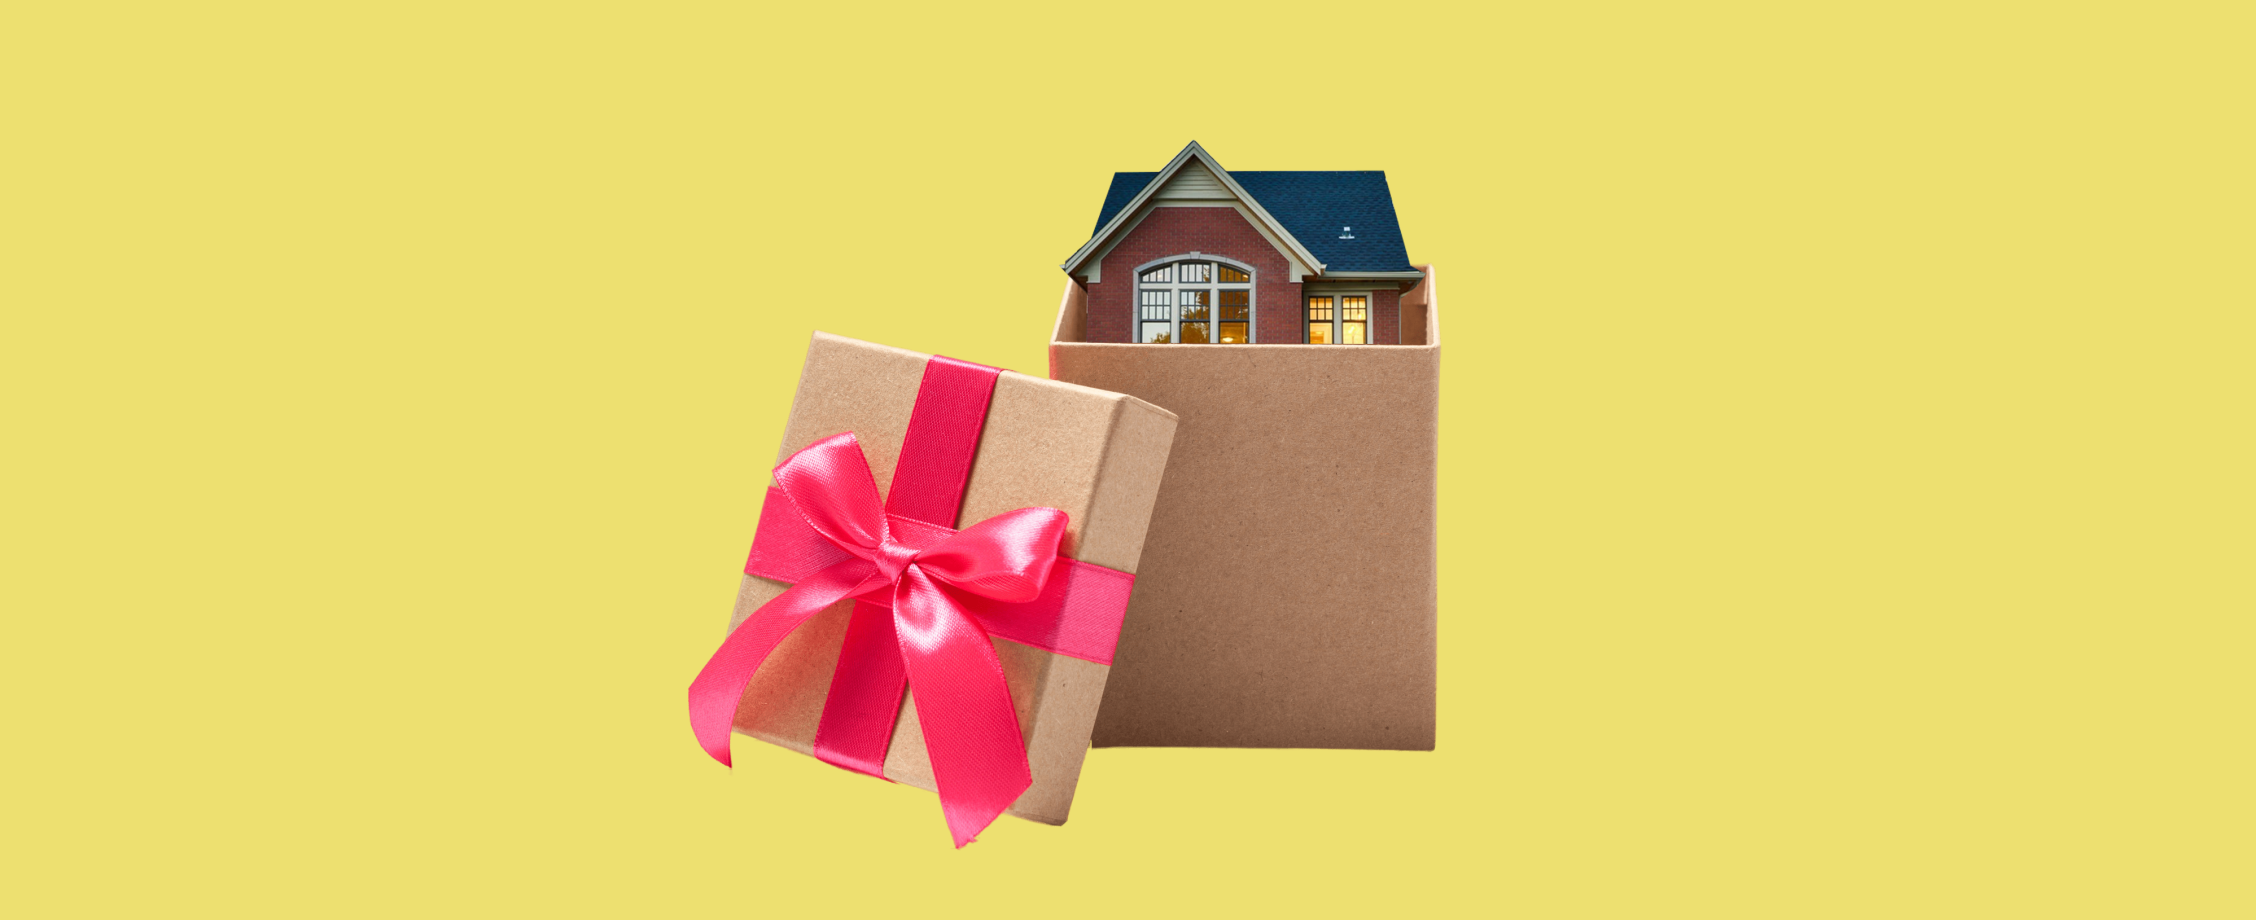 Обменять, продать, подарить: как переписать квартиру на жену или другого человека